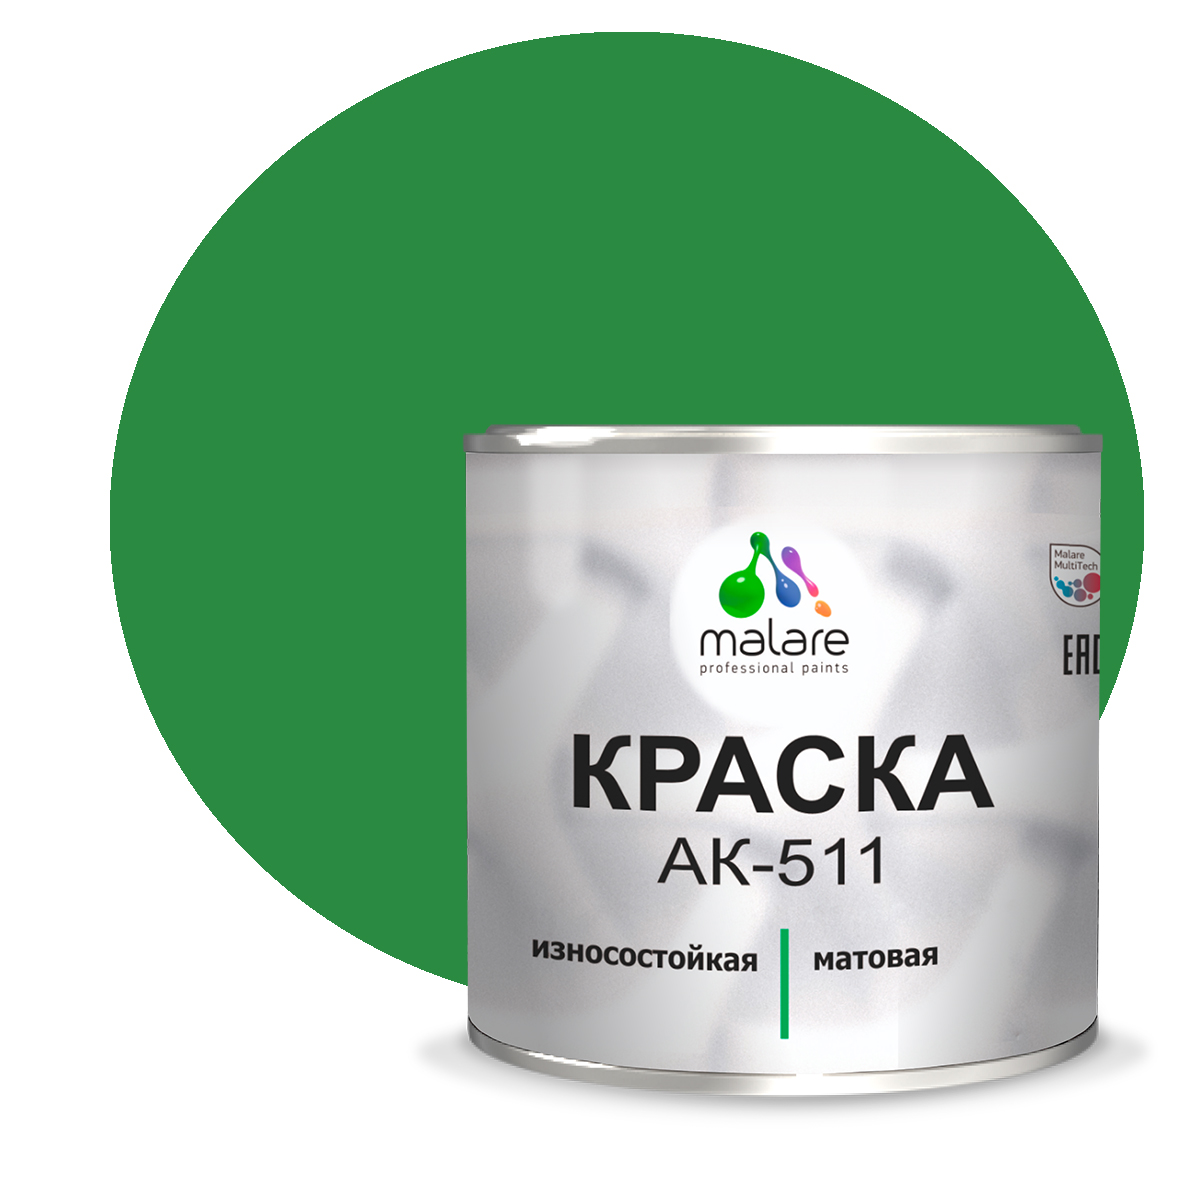 Краска Malare АК-511 для дорожной разметки для пола RAL 6032 зеленый 2,5 кг.